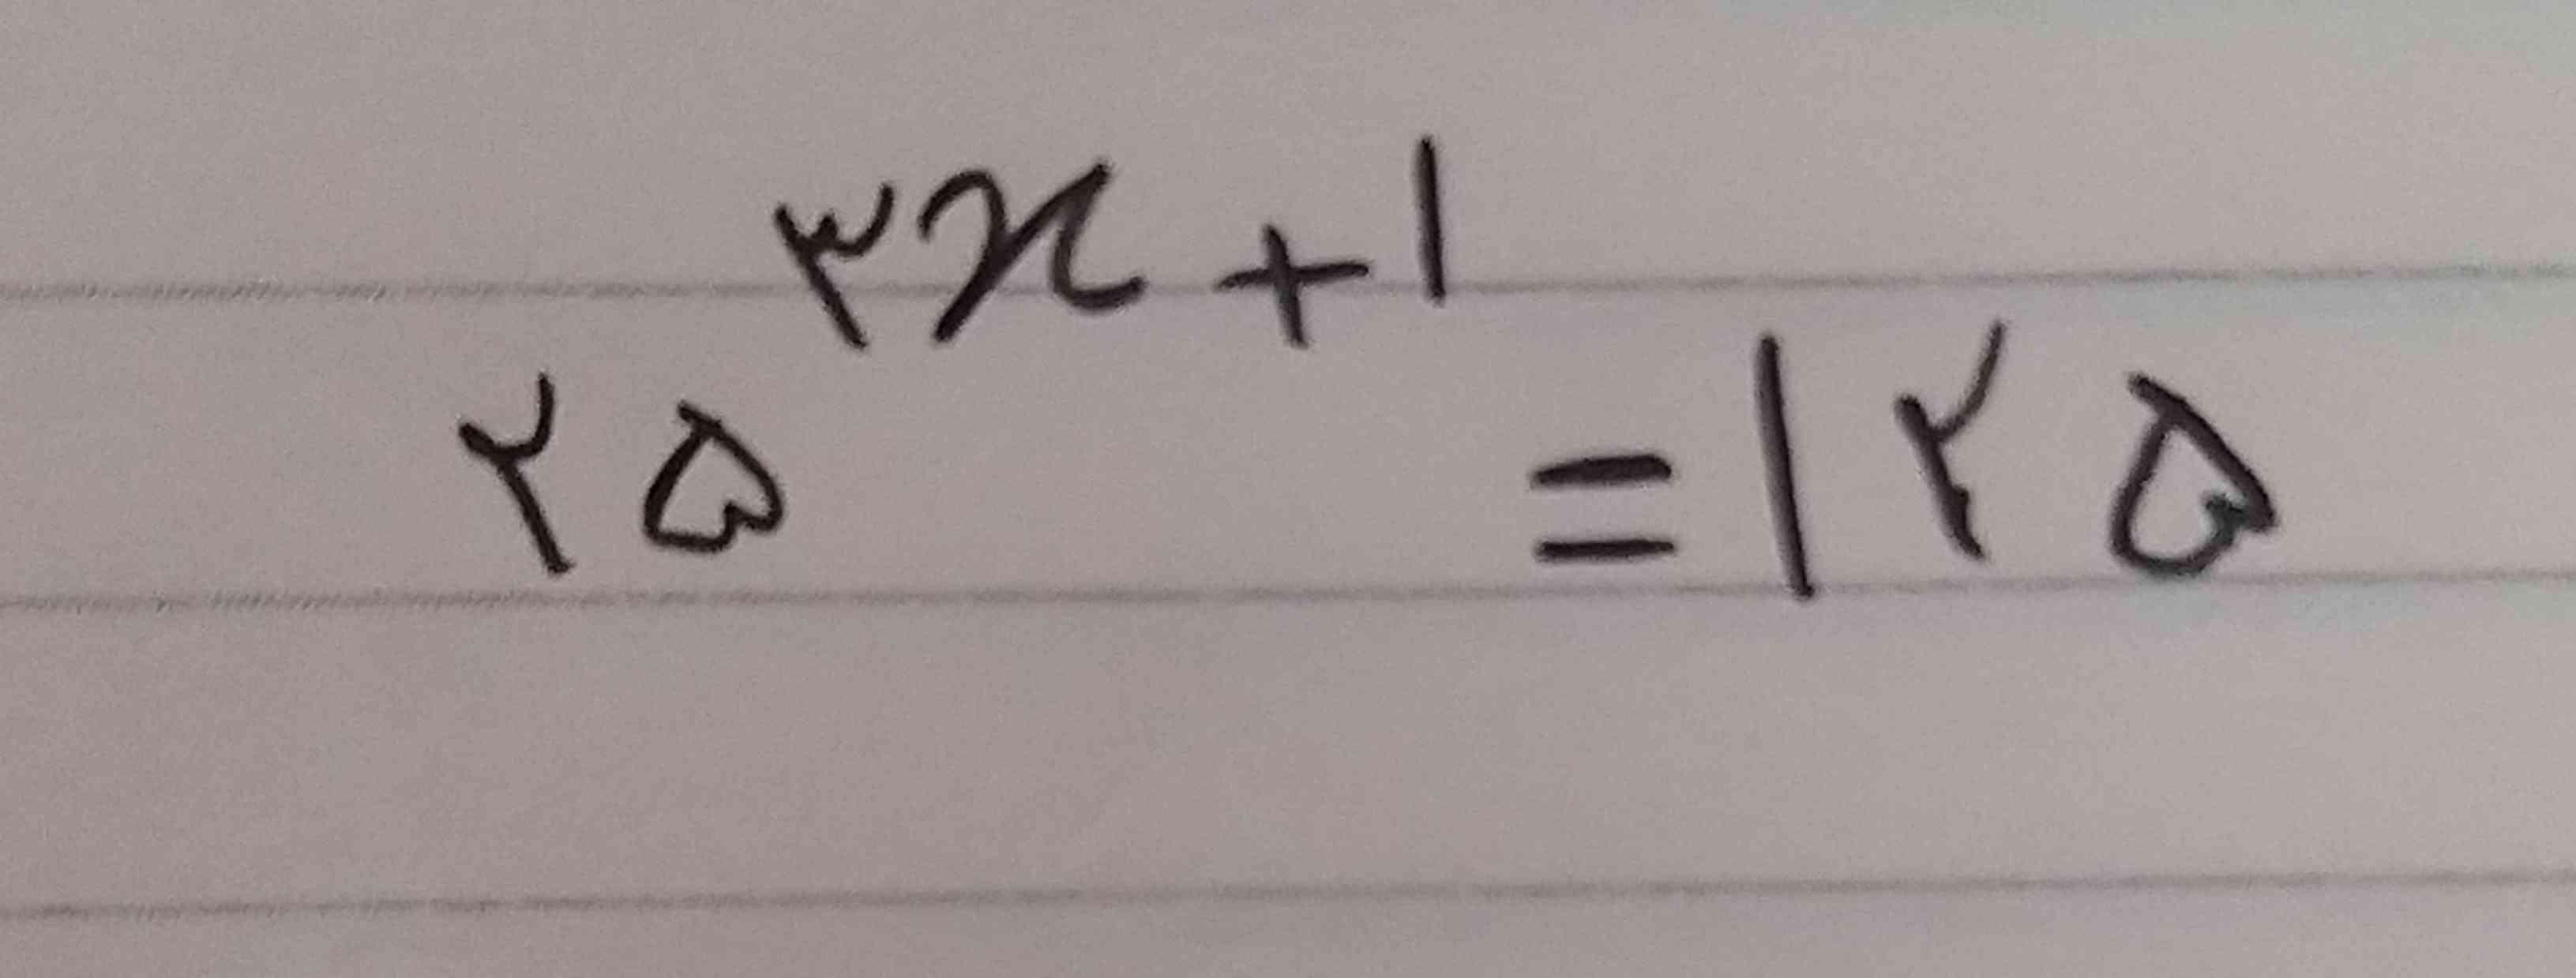 مقدار  عددی x را بدست آورید